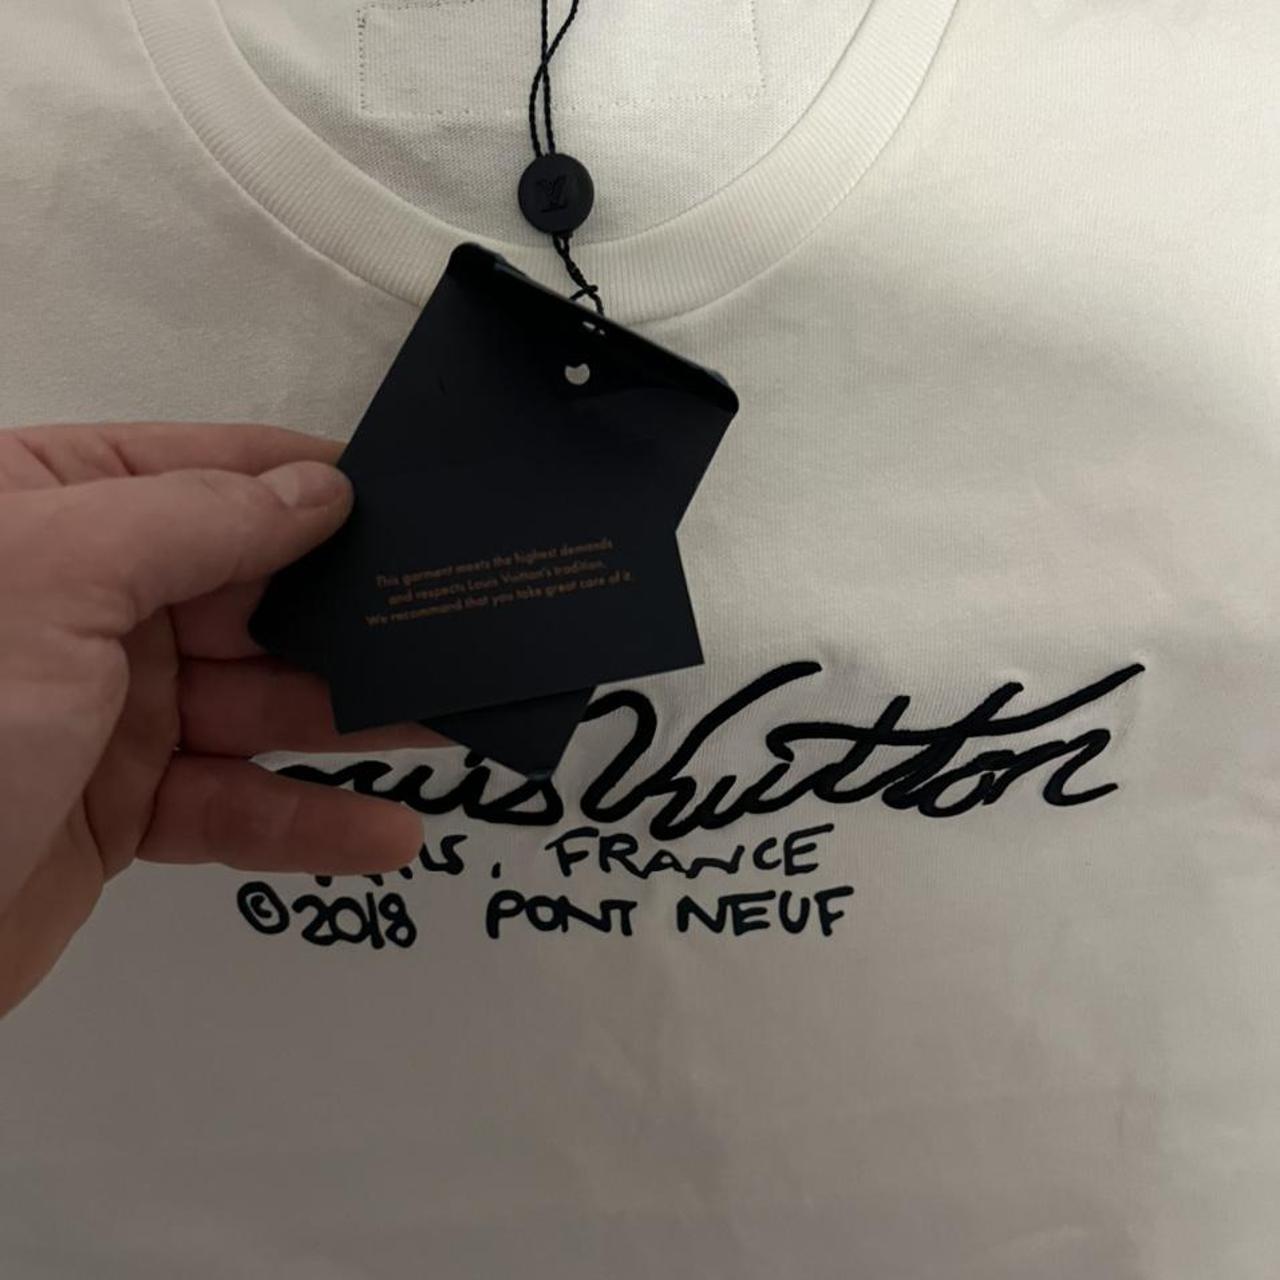 Men's Louis Vuitton T-shirt. Open to offers. Don't - Depop